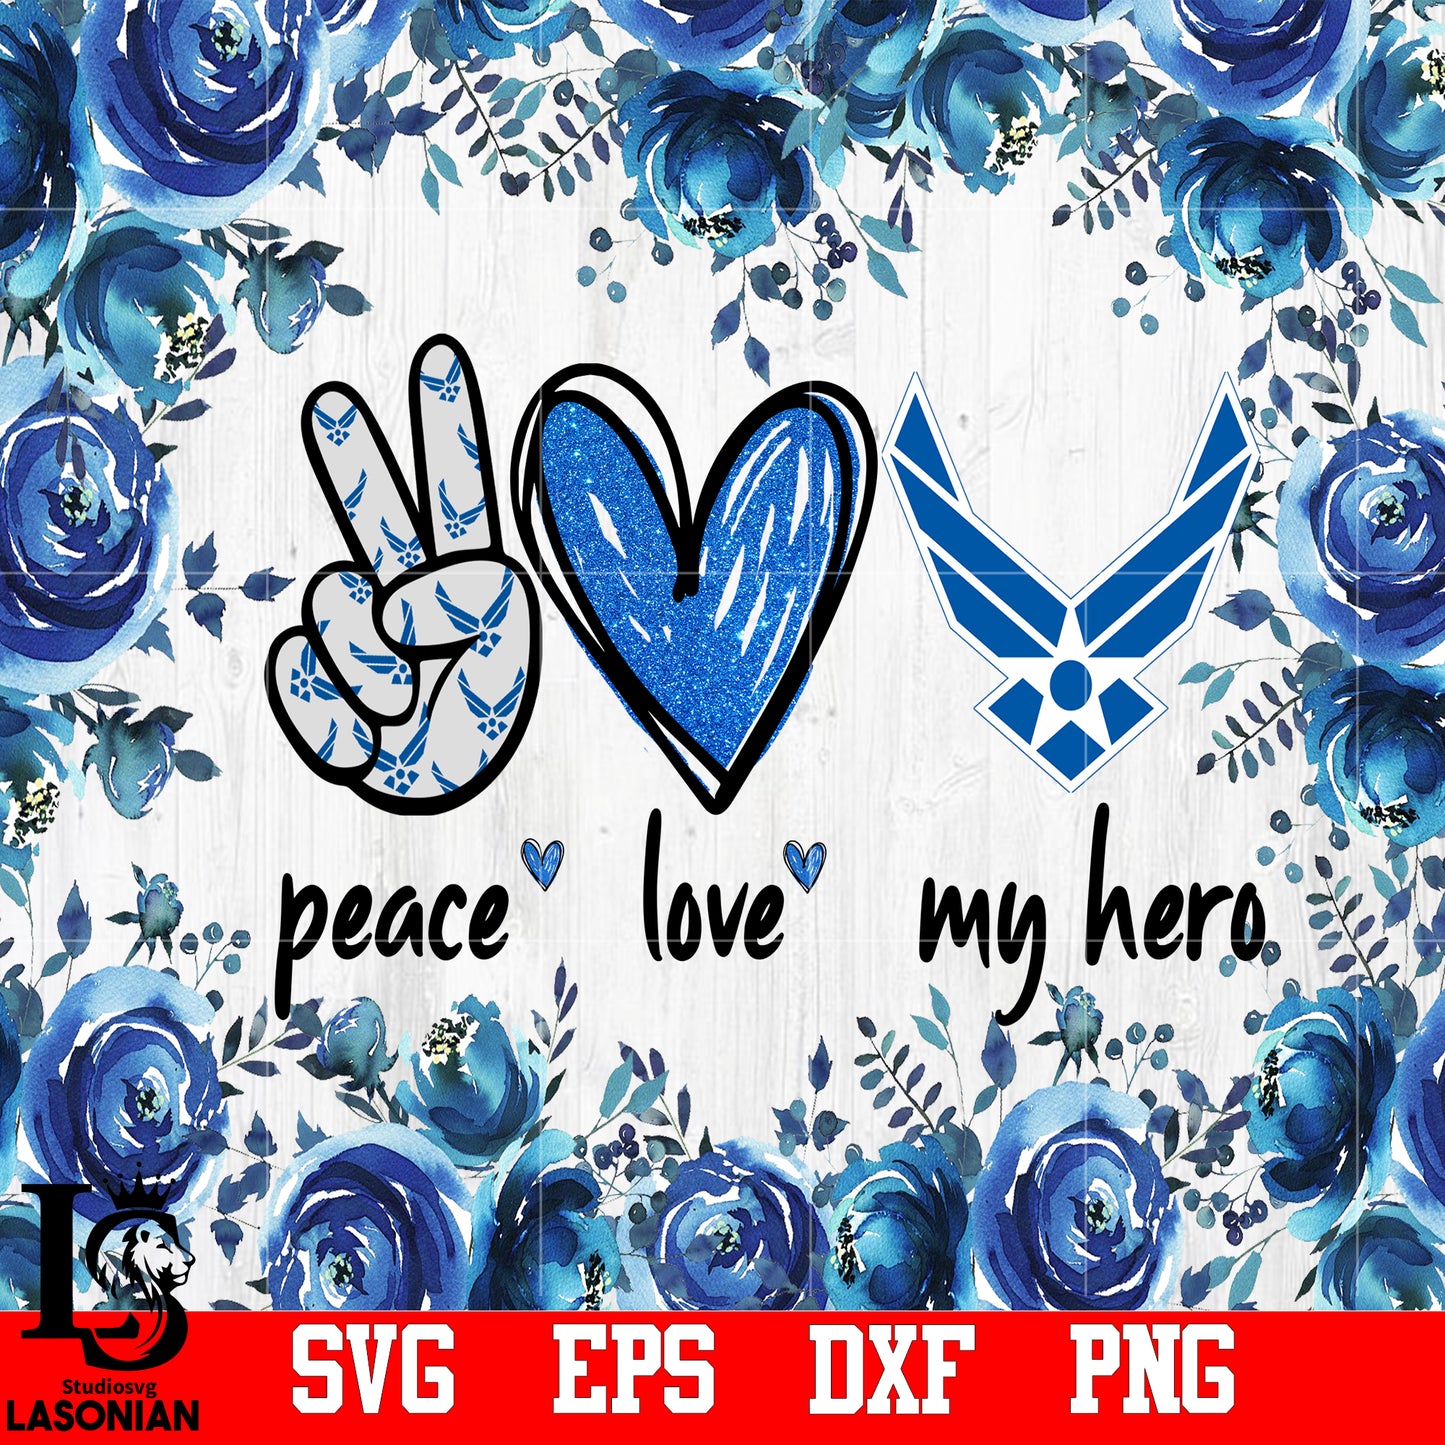 Peace Love My hero Ari Force PNG file